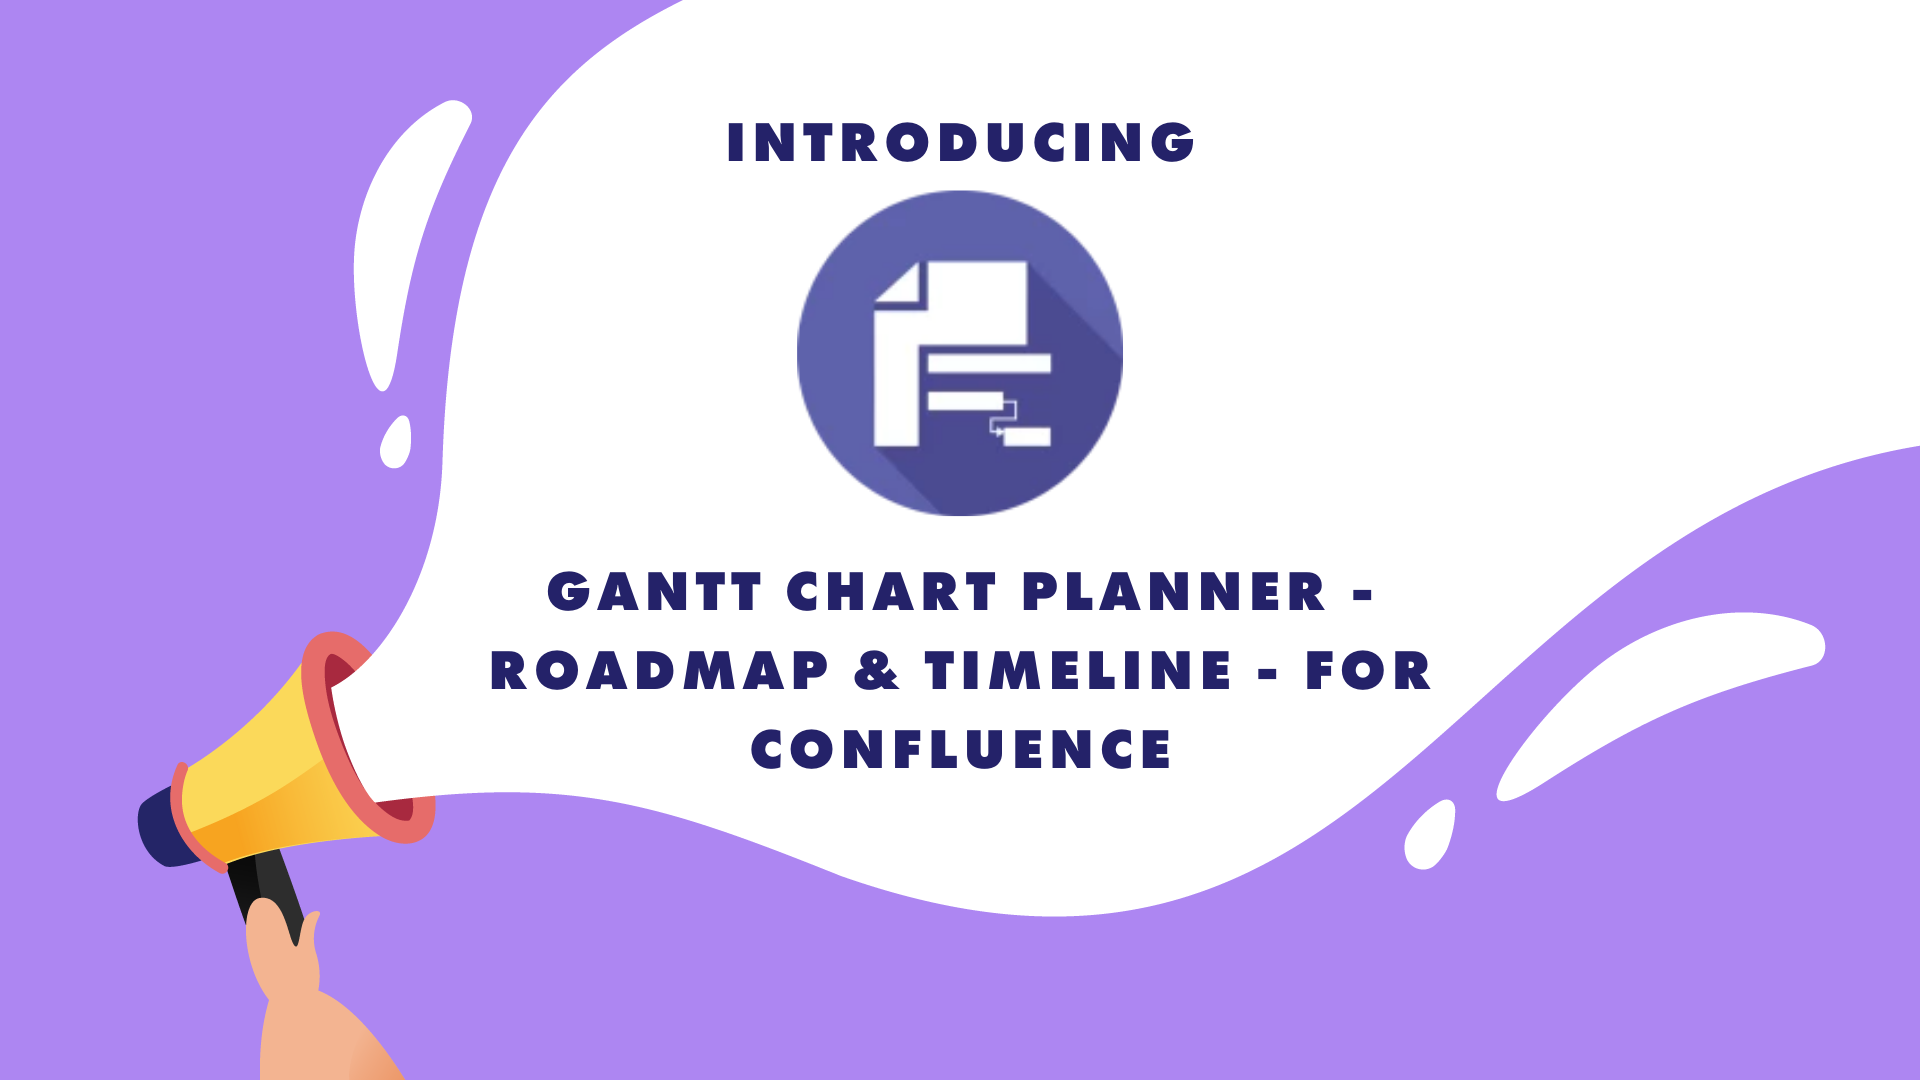 Gantt Chart Planner for Confluence